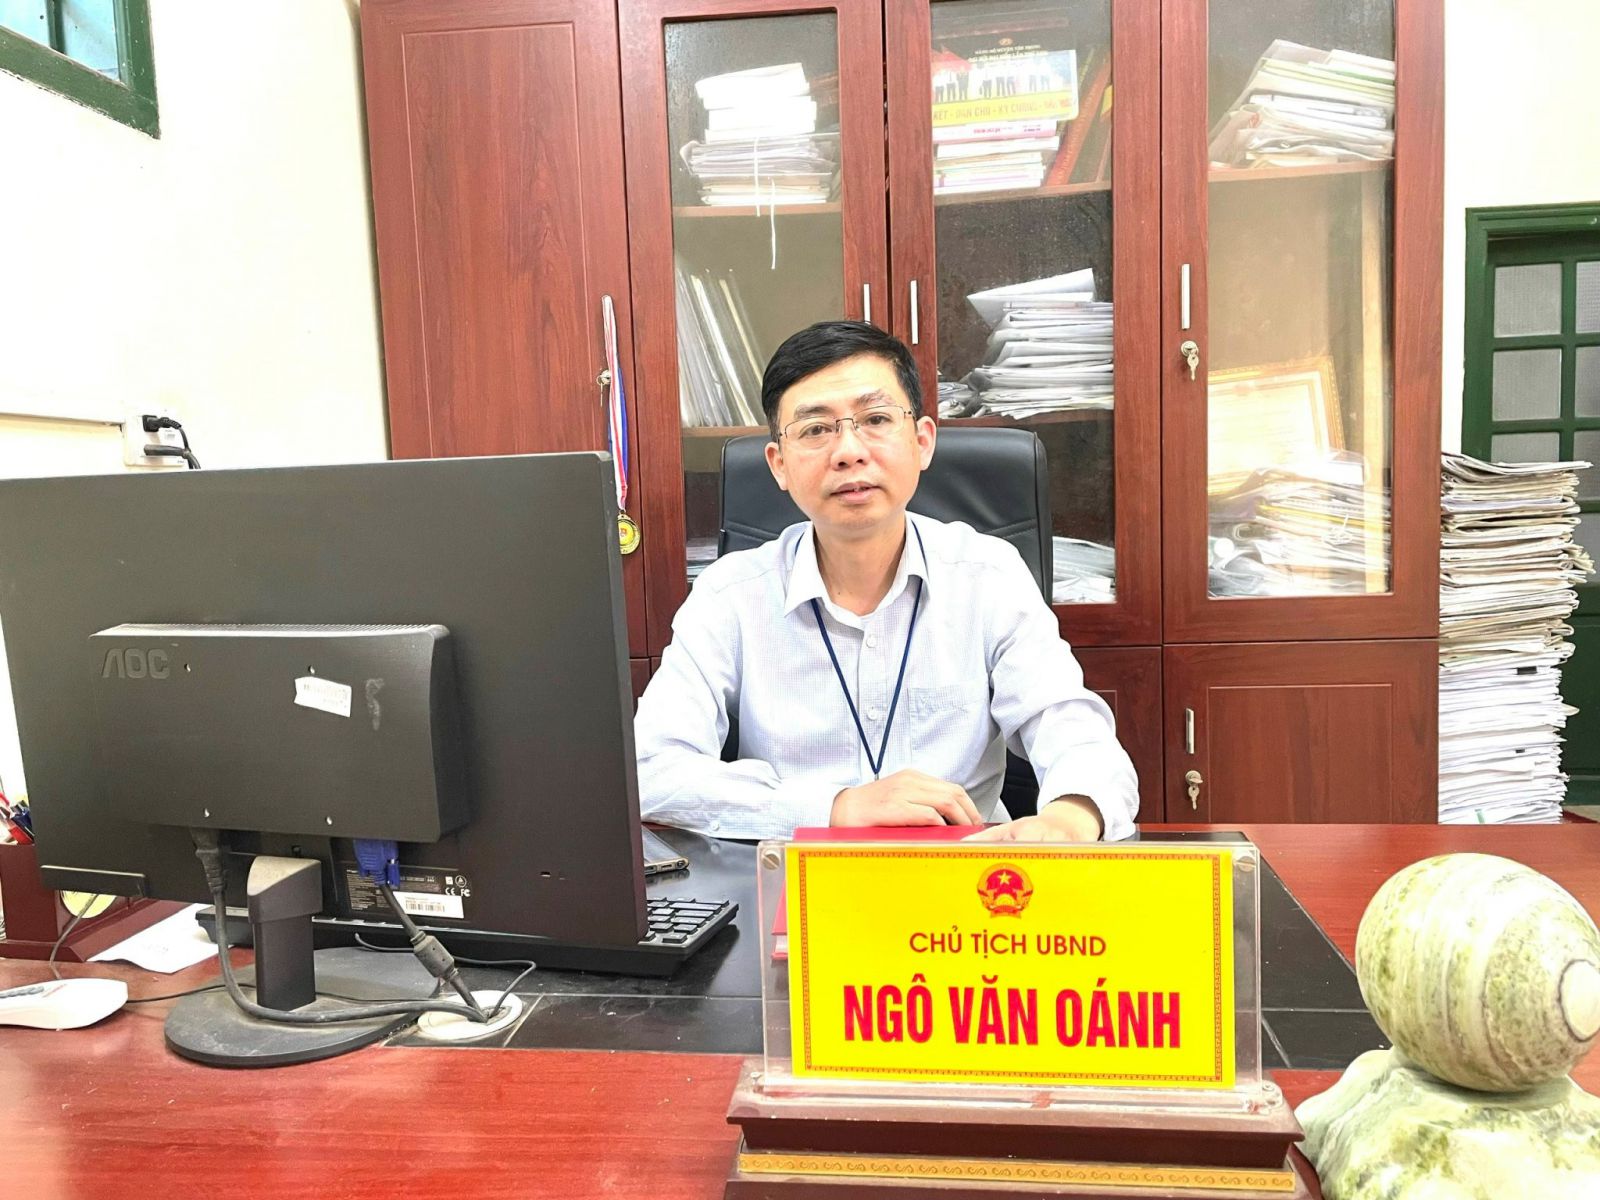 Ông Ngô Văn Oánh – Chủ tịch UBND xã Trung Nghĩa, huyện Yên Phong, tỉnh Bắc Ninh.